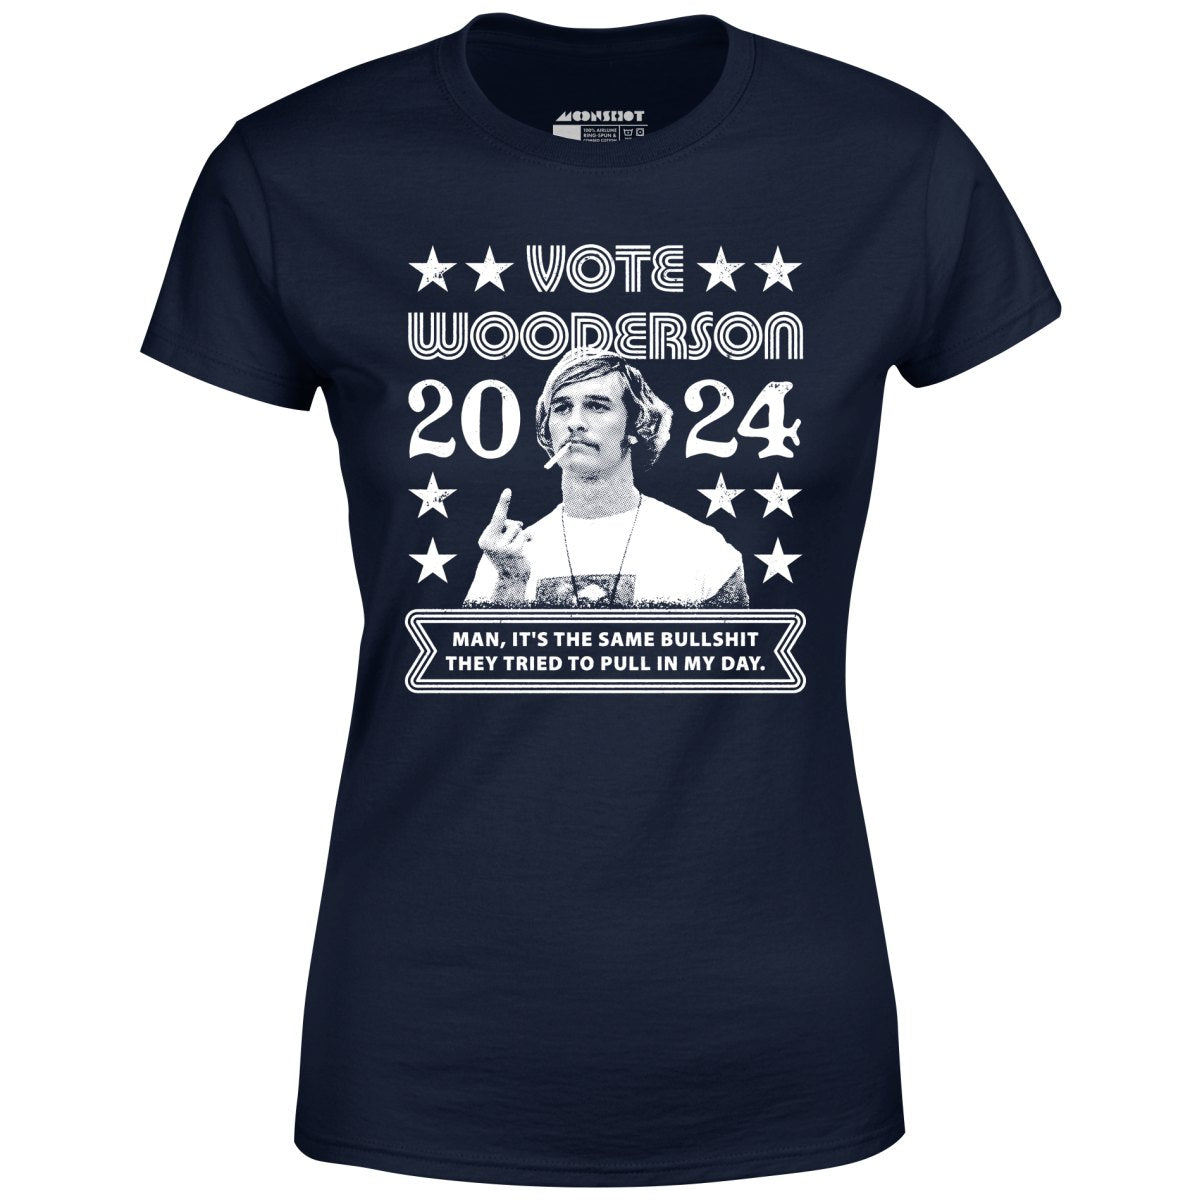 Wooderson 2024 - Women's T-Shirt